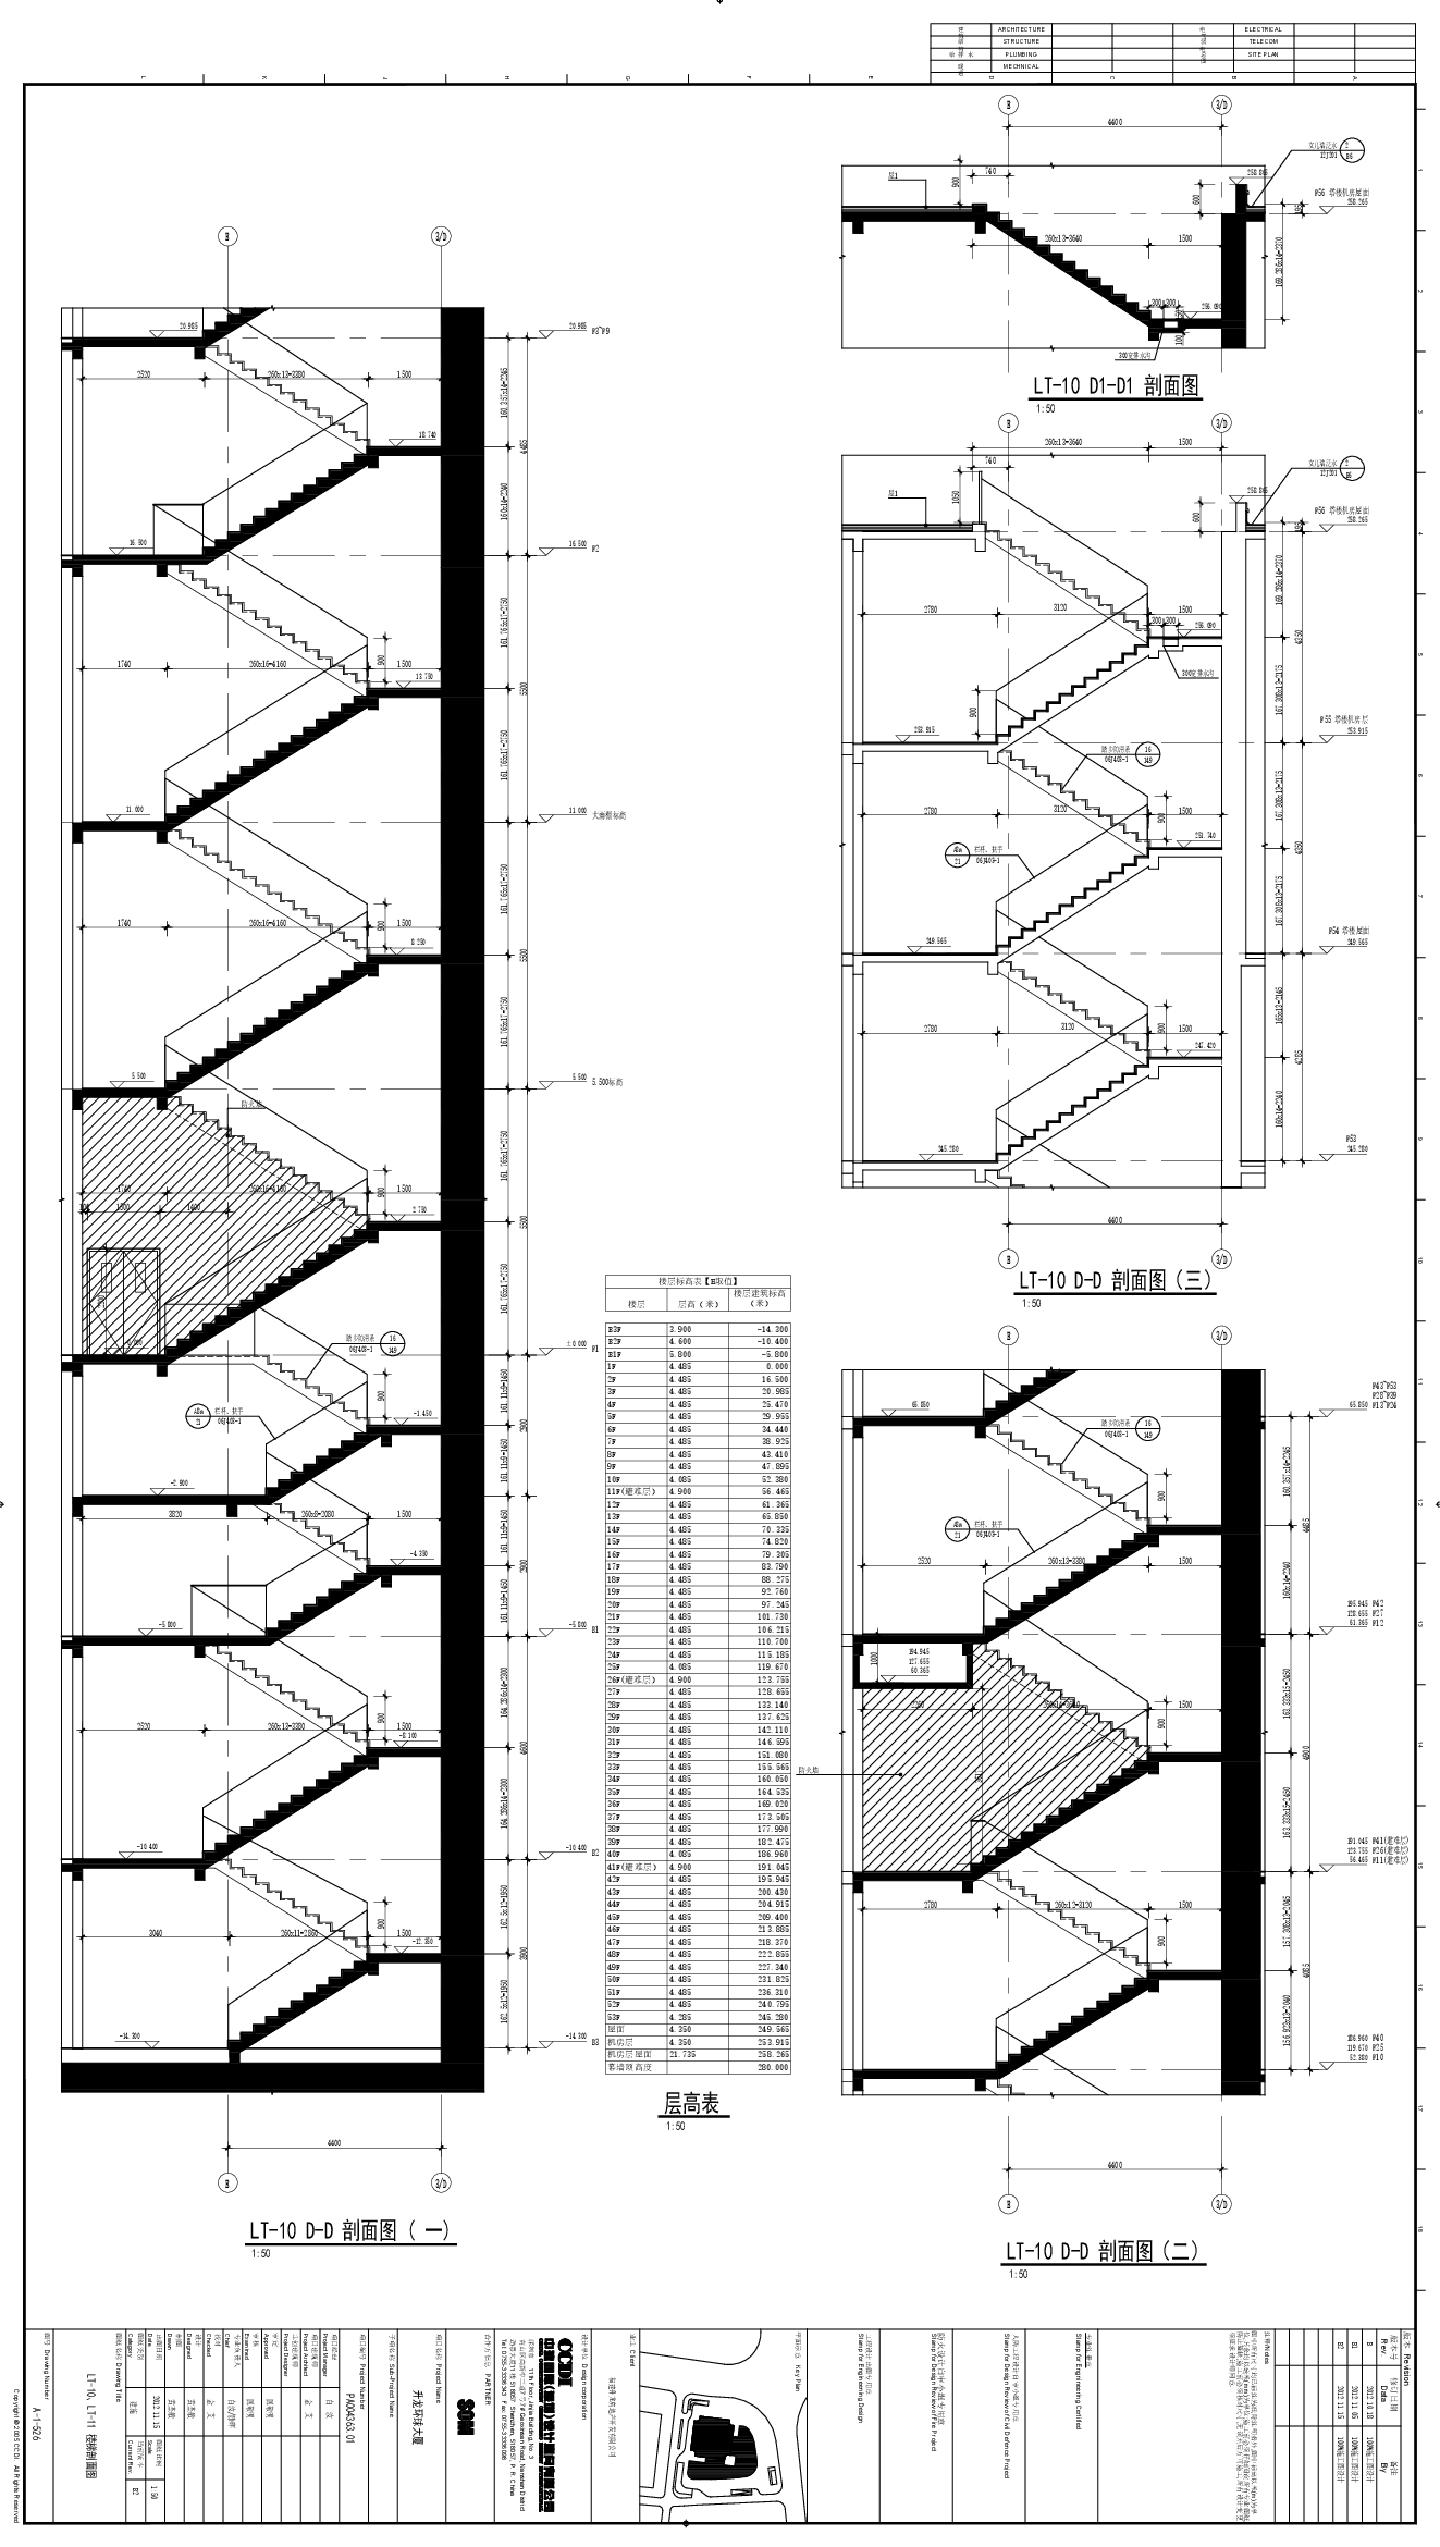 升龙环球大厦-建施A-1-526 - LT-10.LT-11楼梯剖面CAD图